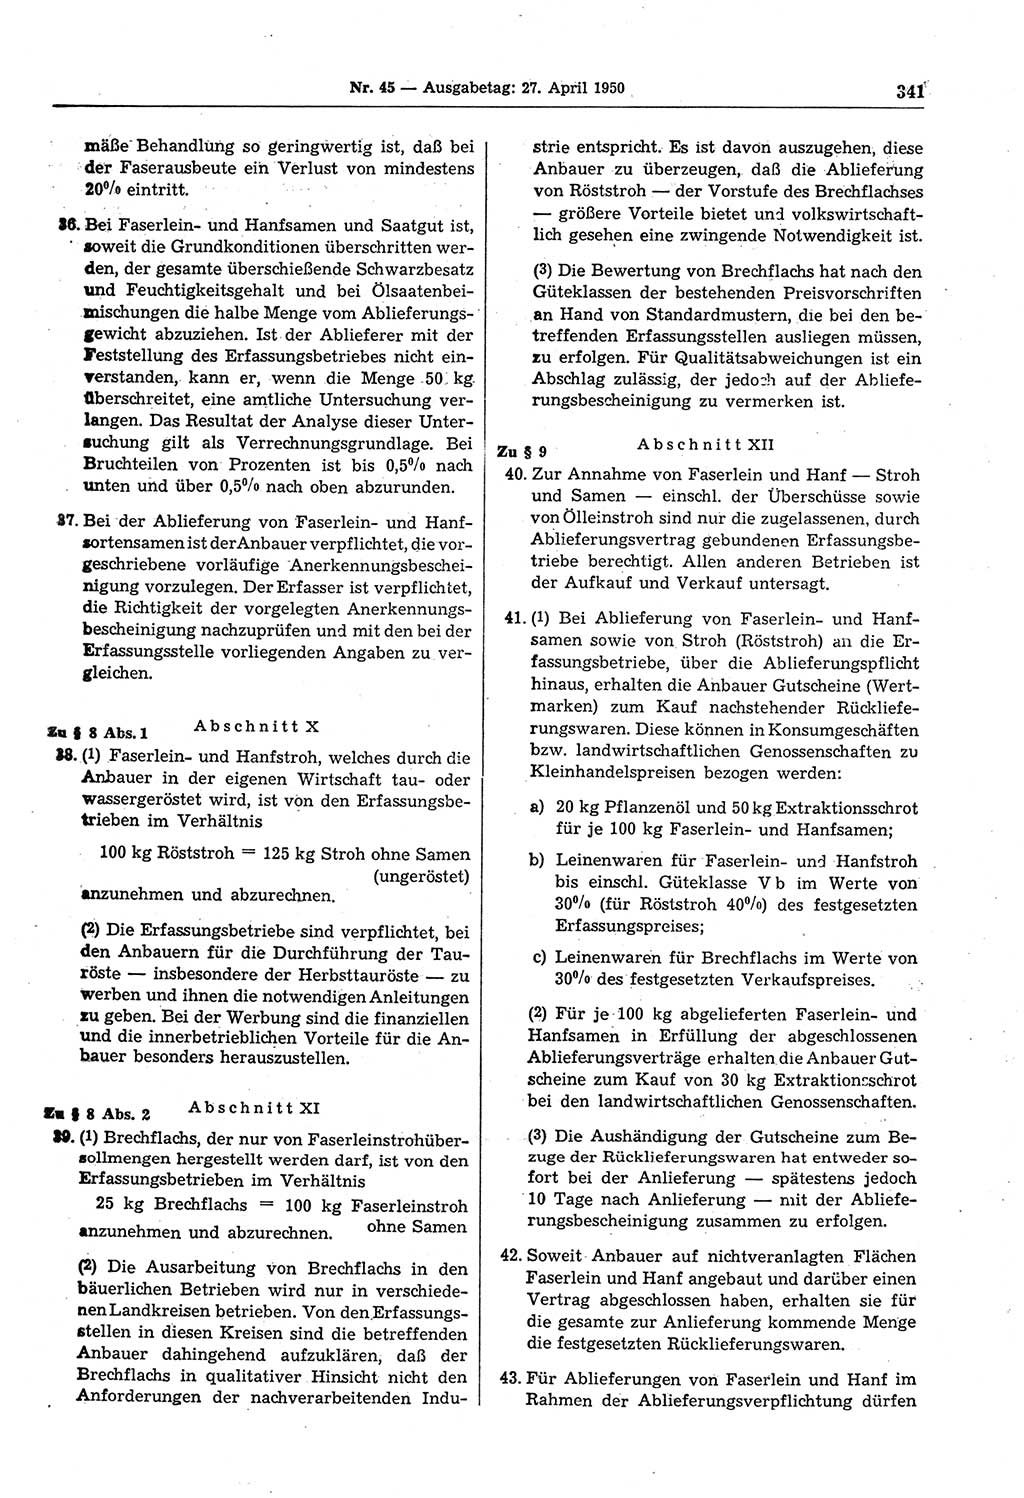 Gesetzblatt (GBl.) der Deutschen Demokratischen Republik (DDR) 1950, Seite 341 (GBl. DDR 1950, S. 341)